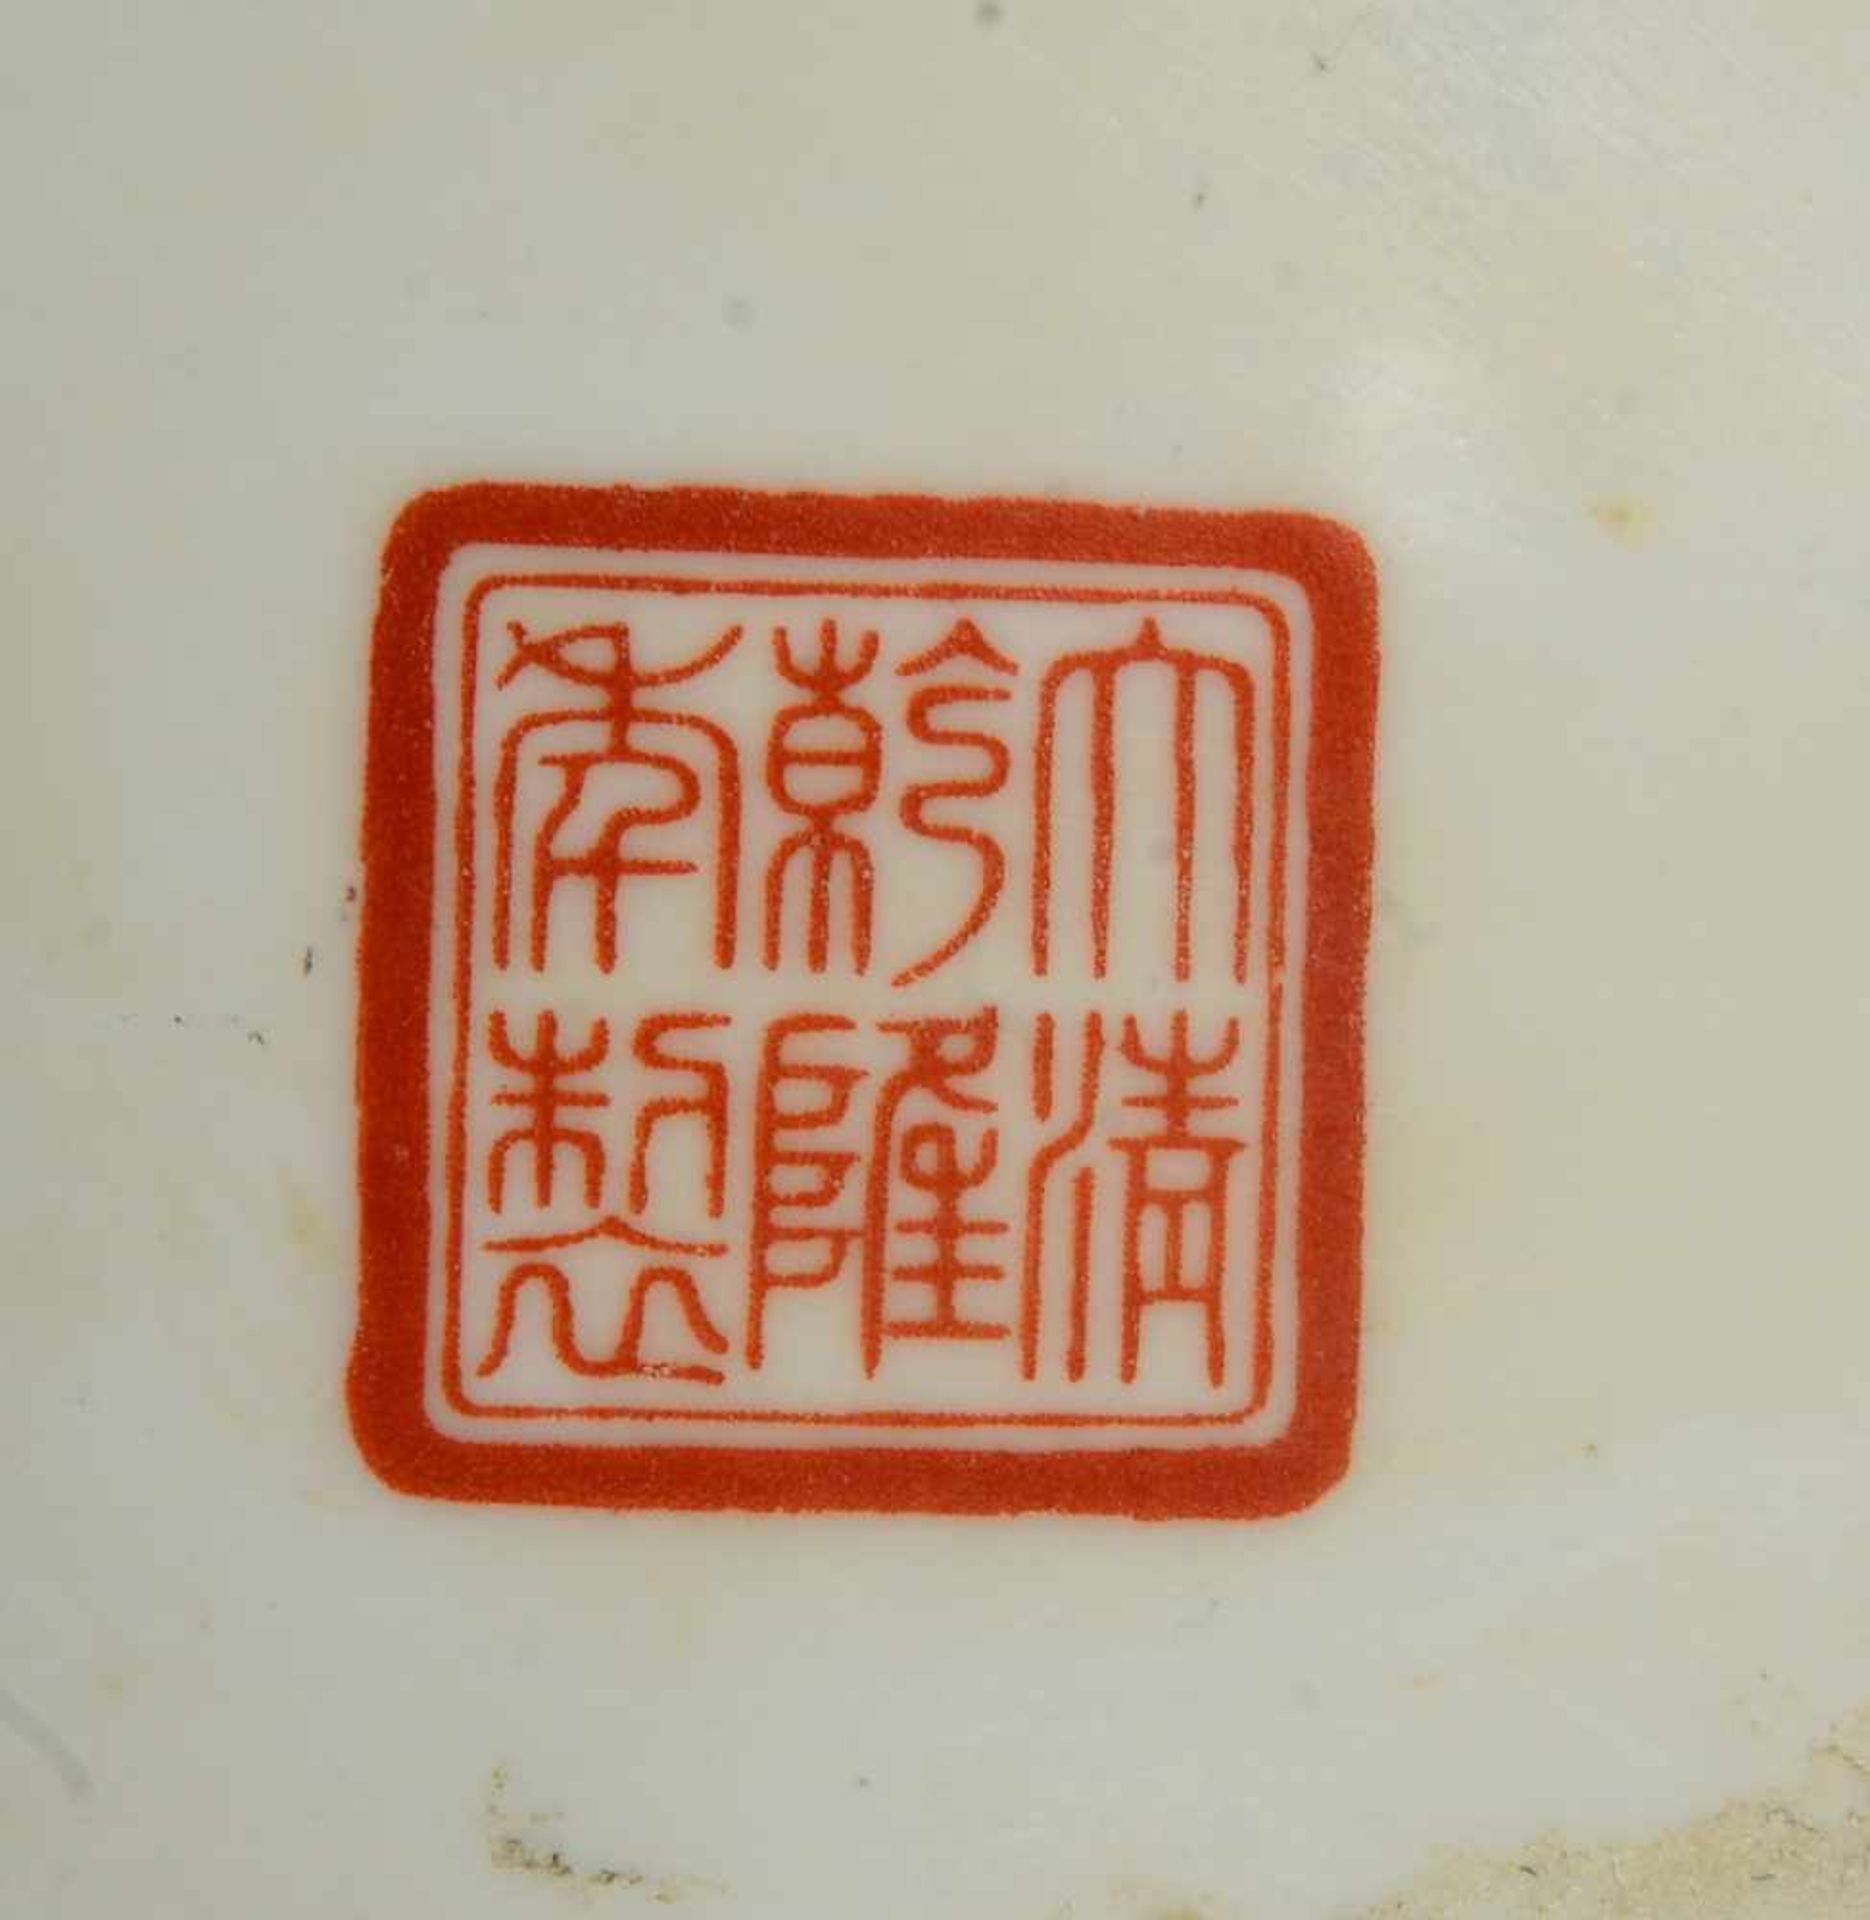 Deckeldose (China), Porzellan, 2x Kartuschen mit polychromen Figurendarstellungen, gemarkt; Höhe - Bild 2 aus 2